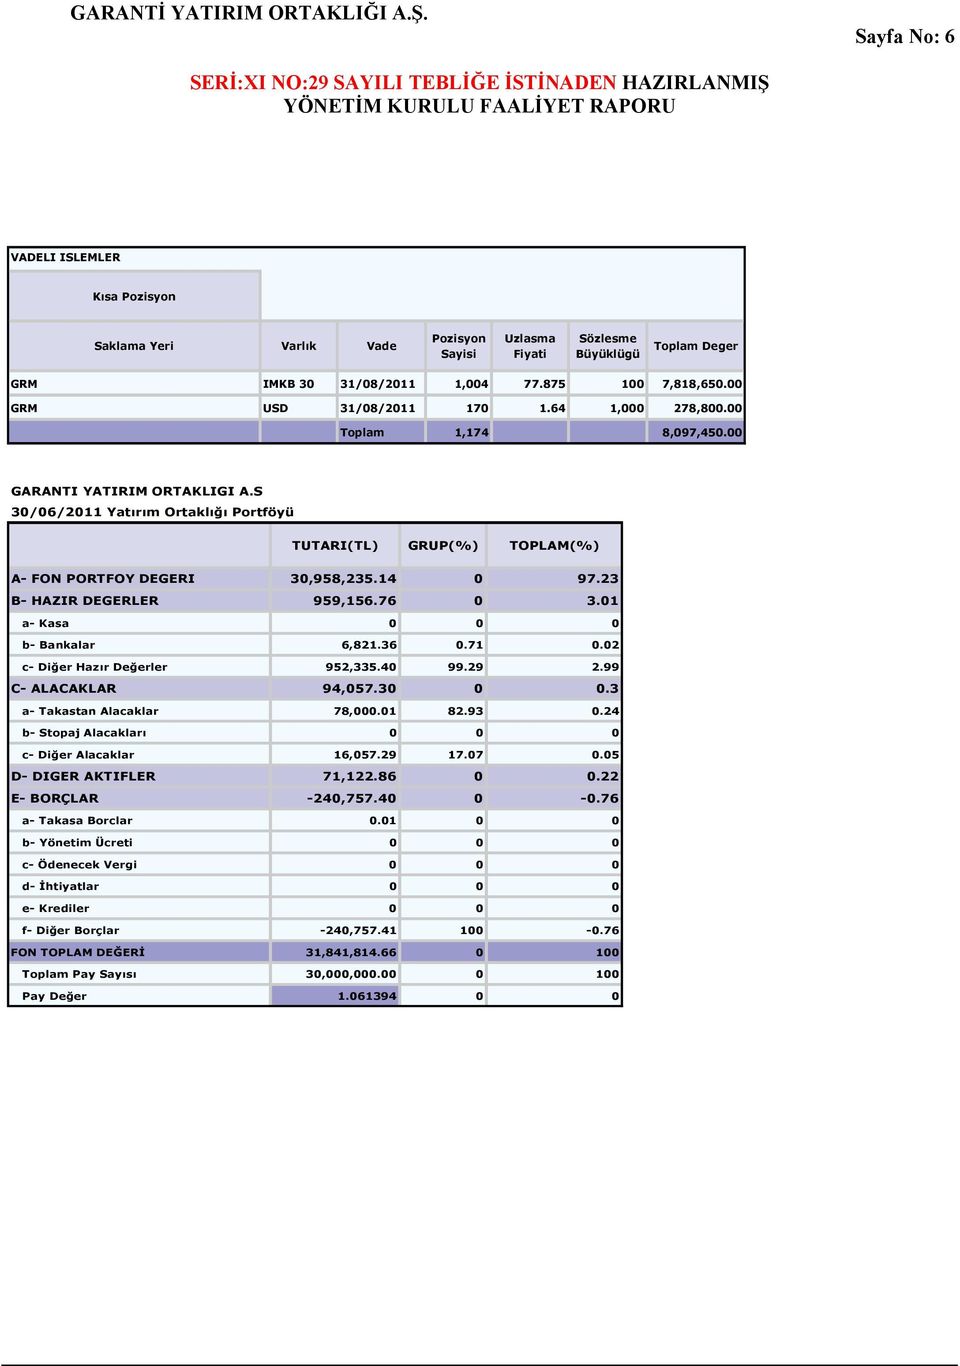 S 30/06/2011 Yatırım Ortaklığı Portföyü TUTARI(TL) GRUP(%) TOPLAM(%) A- FON PORTFOY DEGERI 30,958,235.14 0 97.23 B- HAZIR DEGERLER 959,156.76 0 3.01 a- Kasa 0 0 0 b- Bankalar 6,821.36 0.71 0.